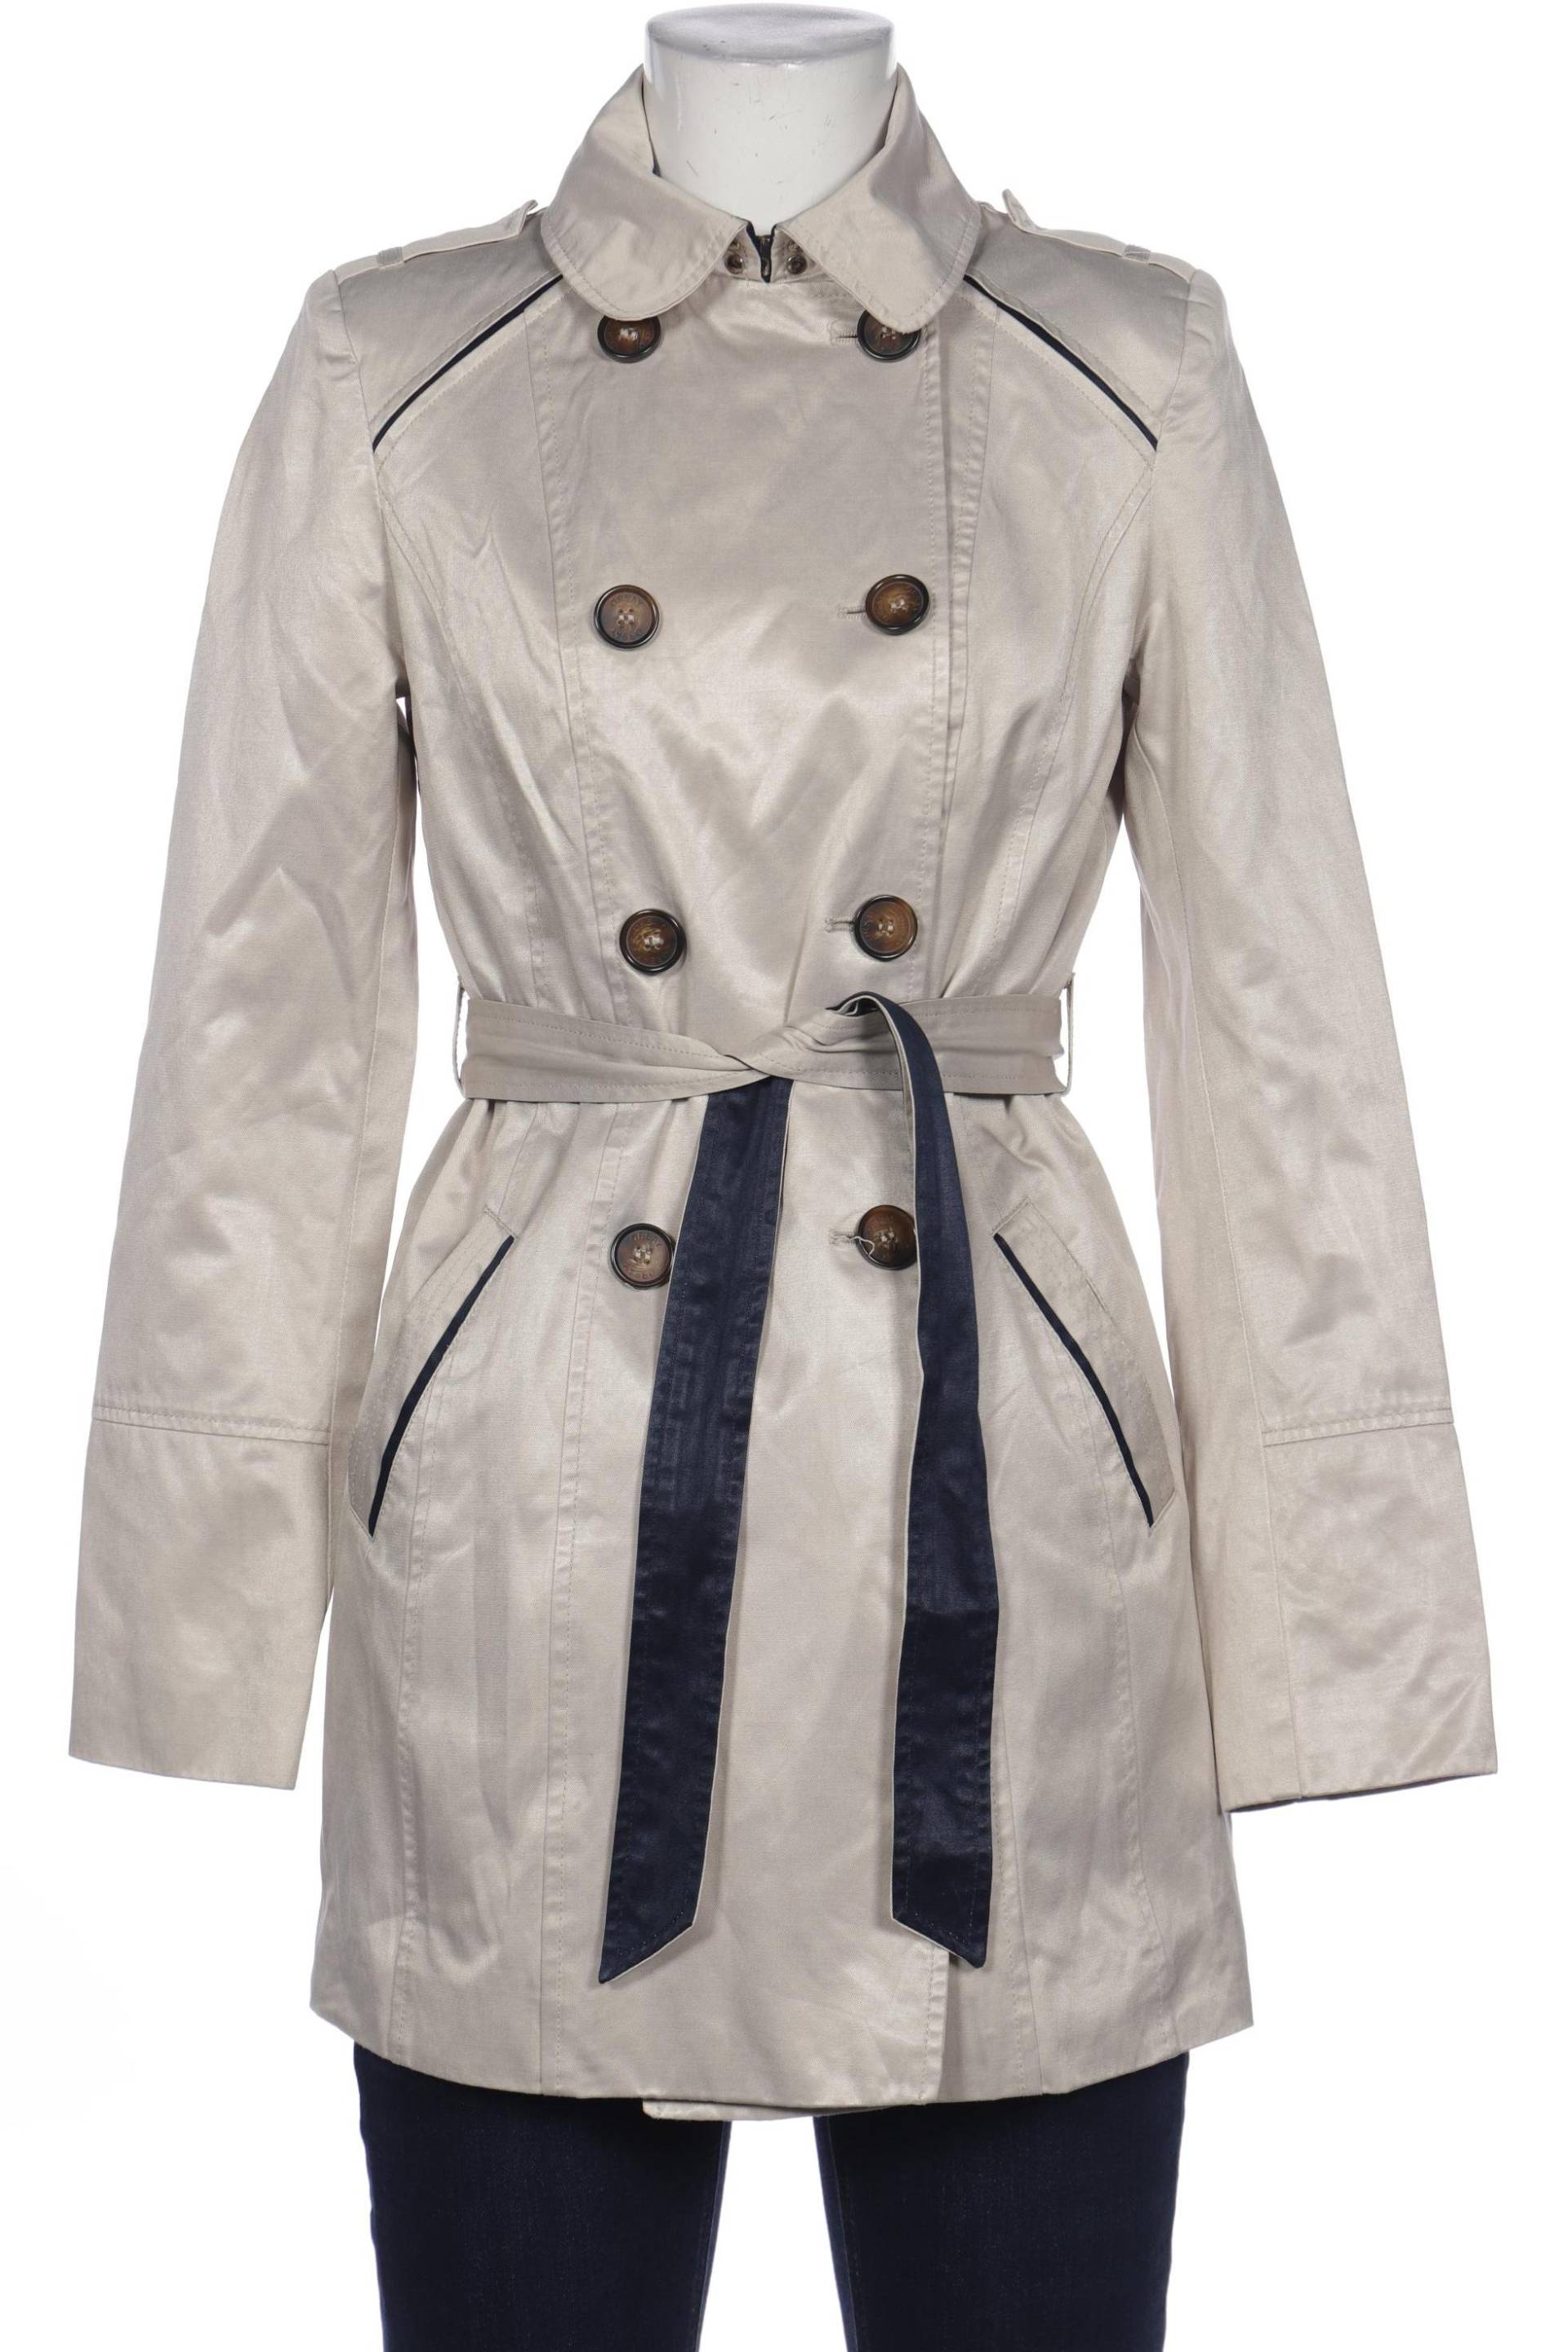 Orsay Damen Mantel, cremeweiß, Gr. 34 von Orsay